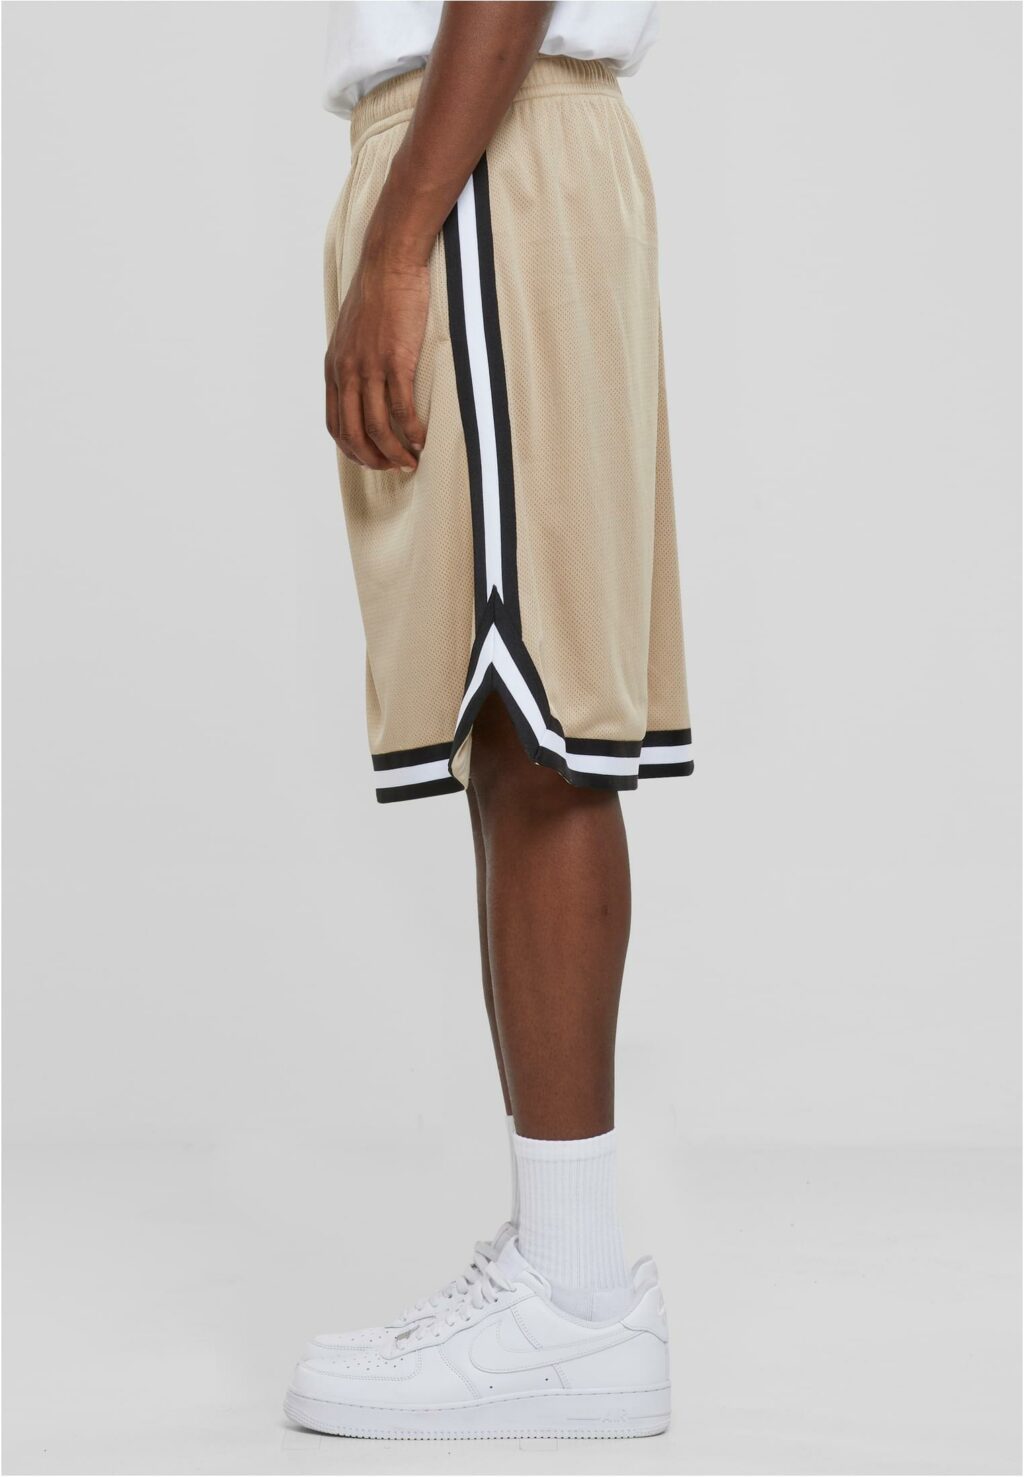 Urban Classics Stripes Mesh Shorts unionbeige/black/white TB243